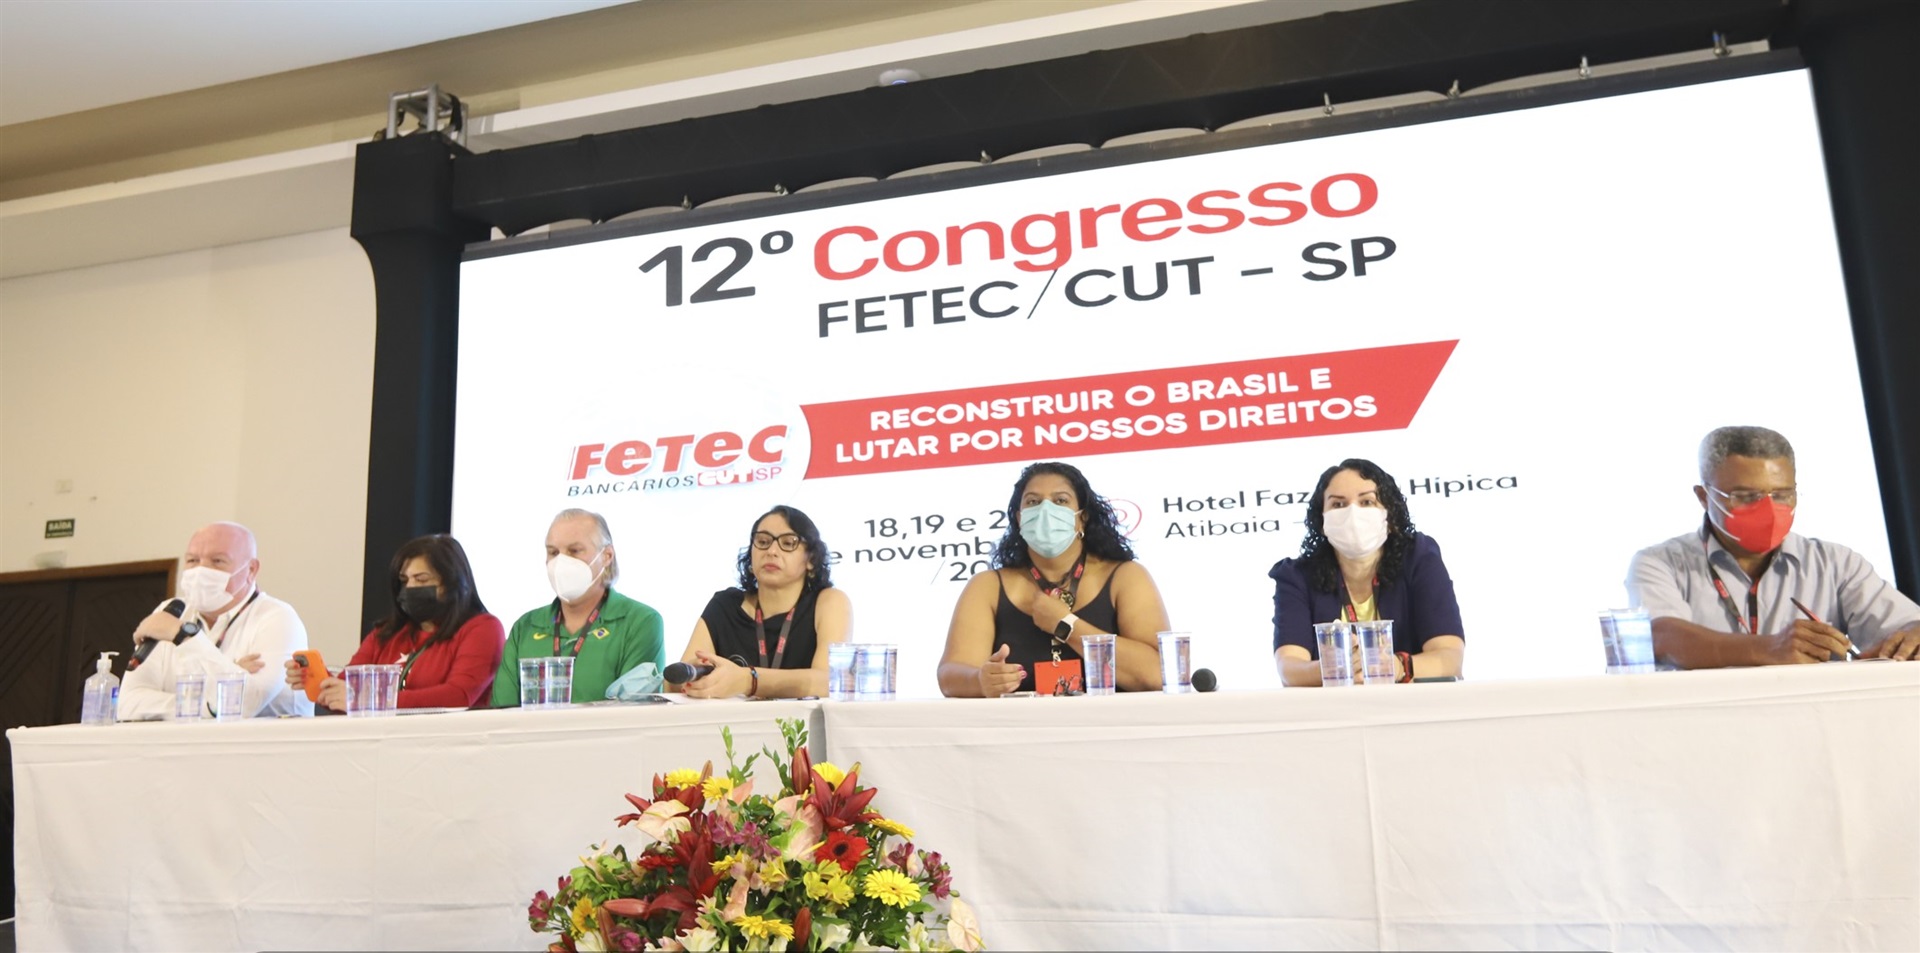 12o. Congresso da FETEC-CUT/SP começa com celebração à vitória da democracia